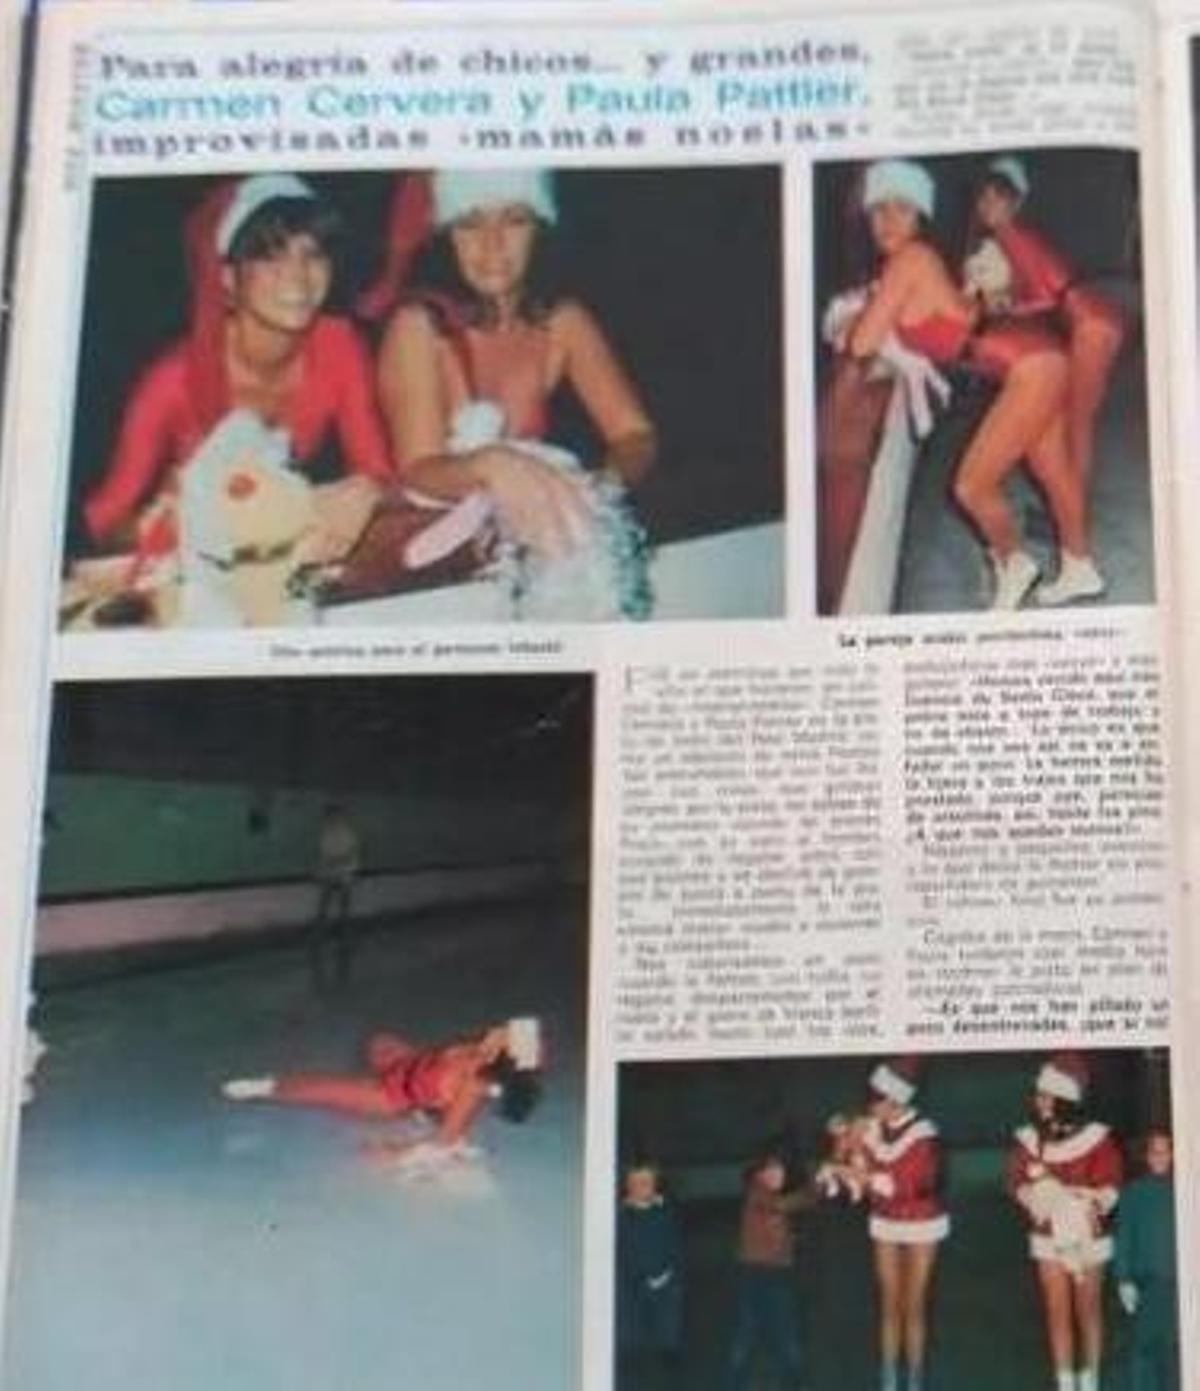 Imágenes de la relación de Tita Cervera y Paula Pattier en una revista.